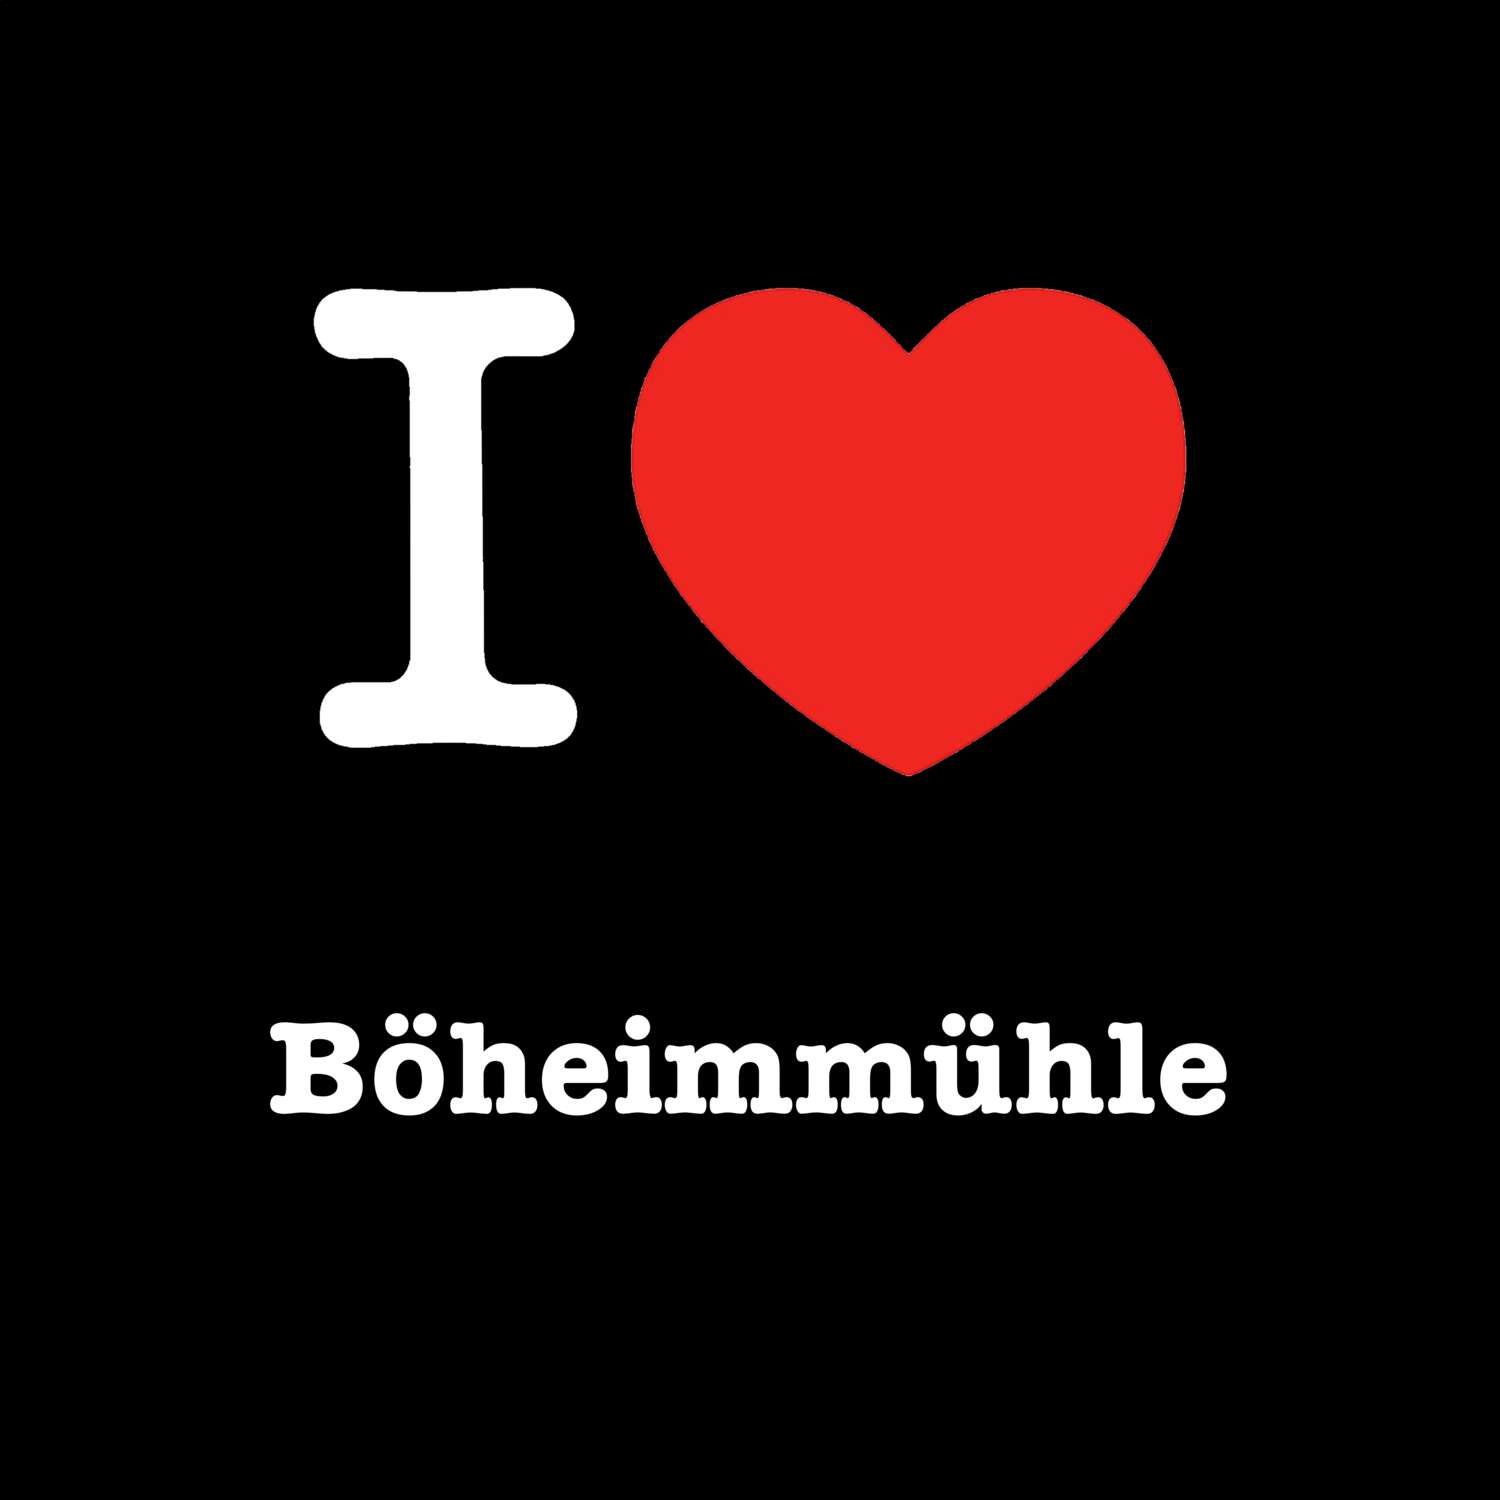 Böheimmühle T-Shirt »I love«